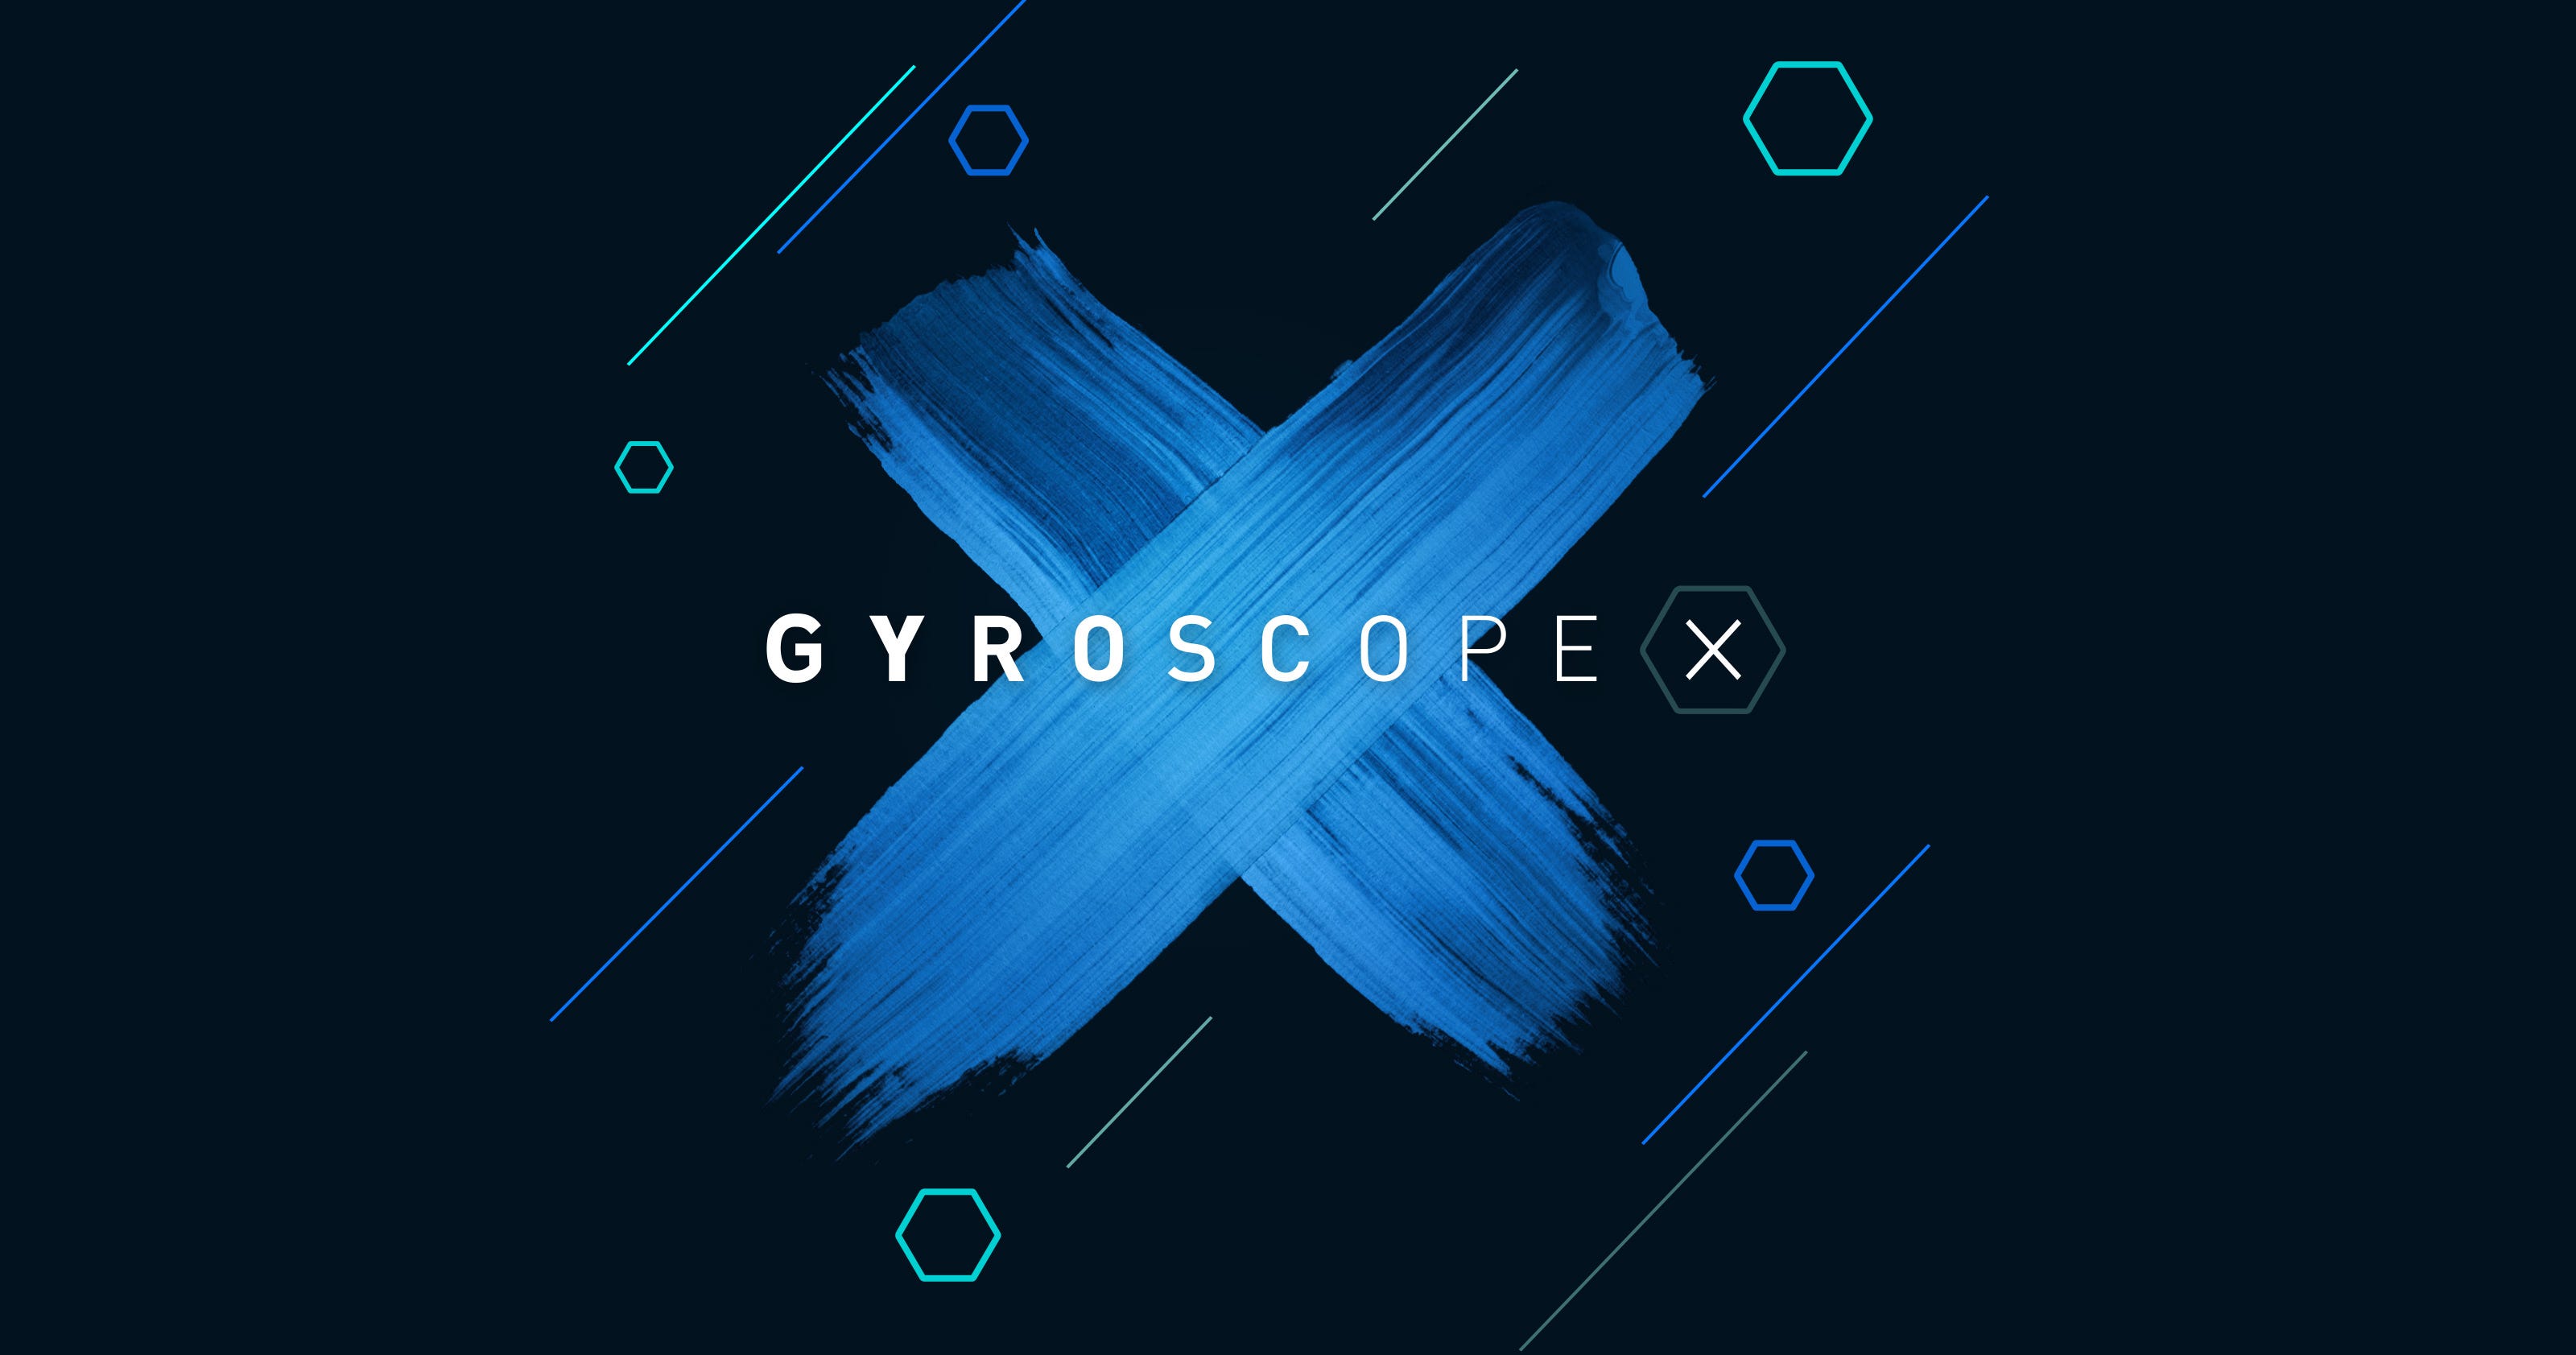 Introducing Gyroscope X - Gyroscope